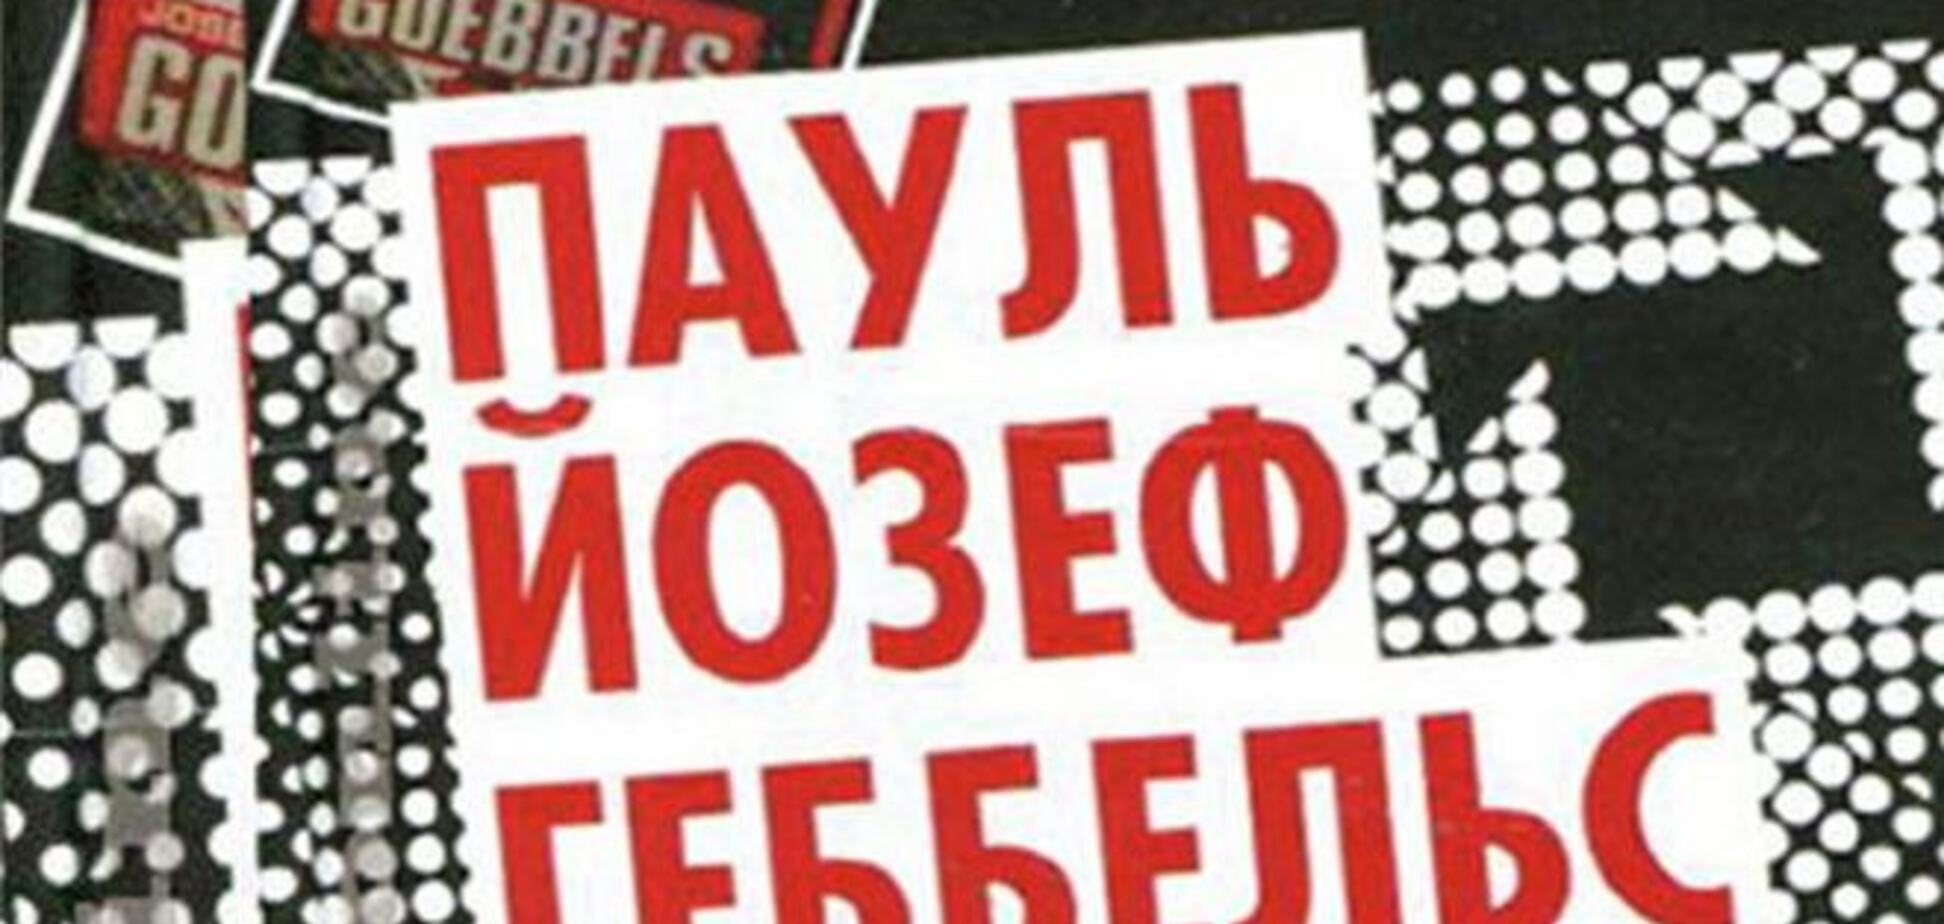 Прокуратура Москвы просит суд признать книгу Геббельса экстремистской